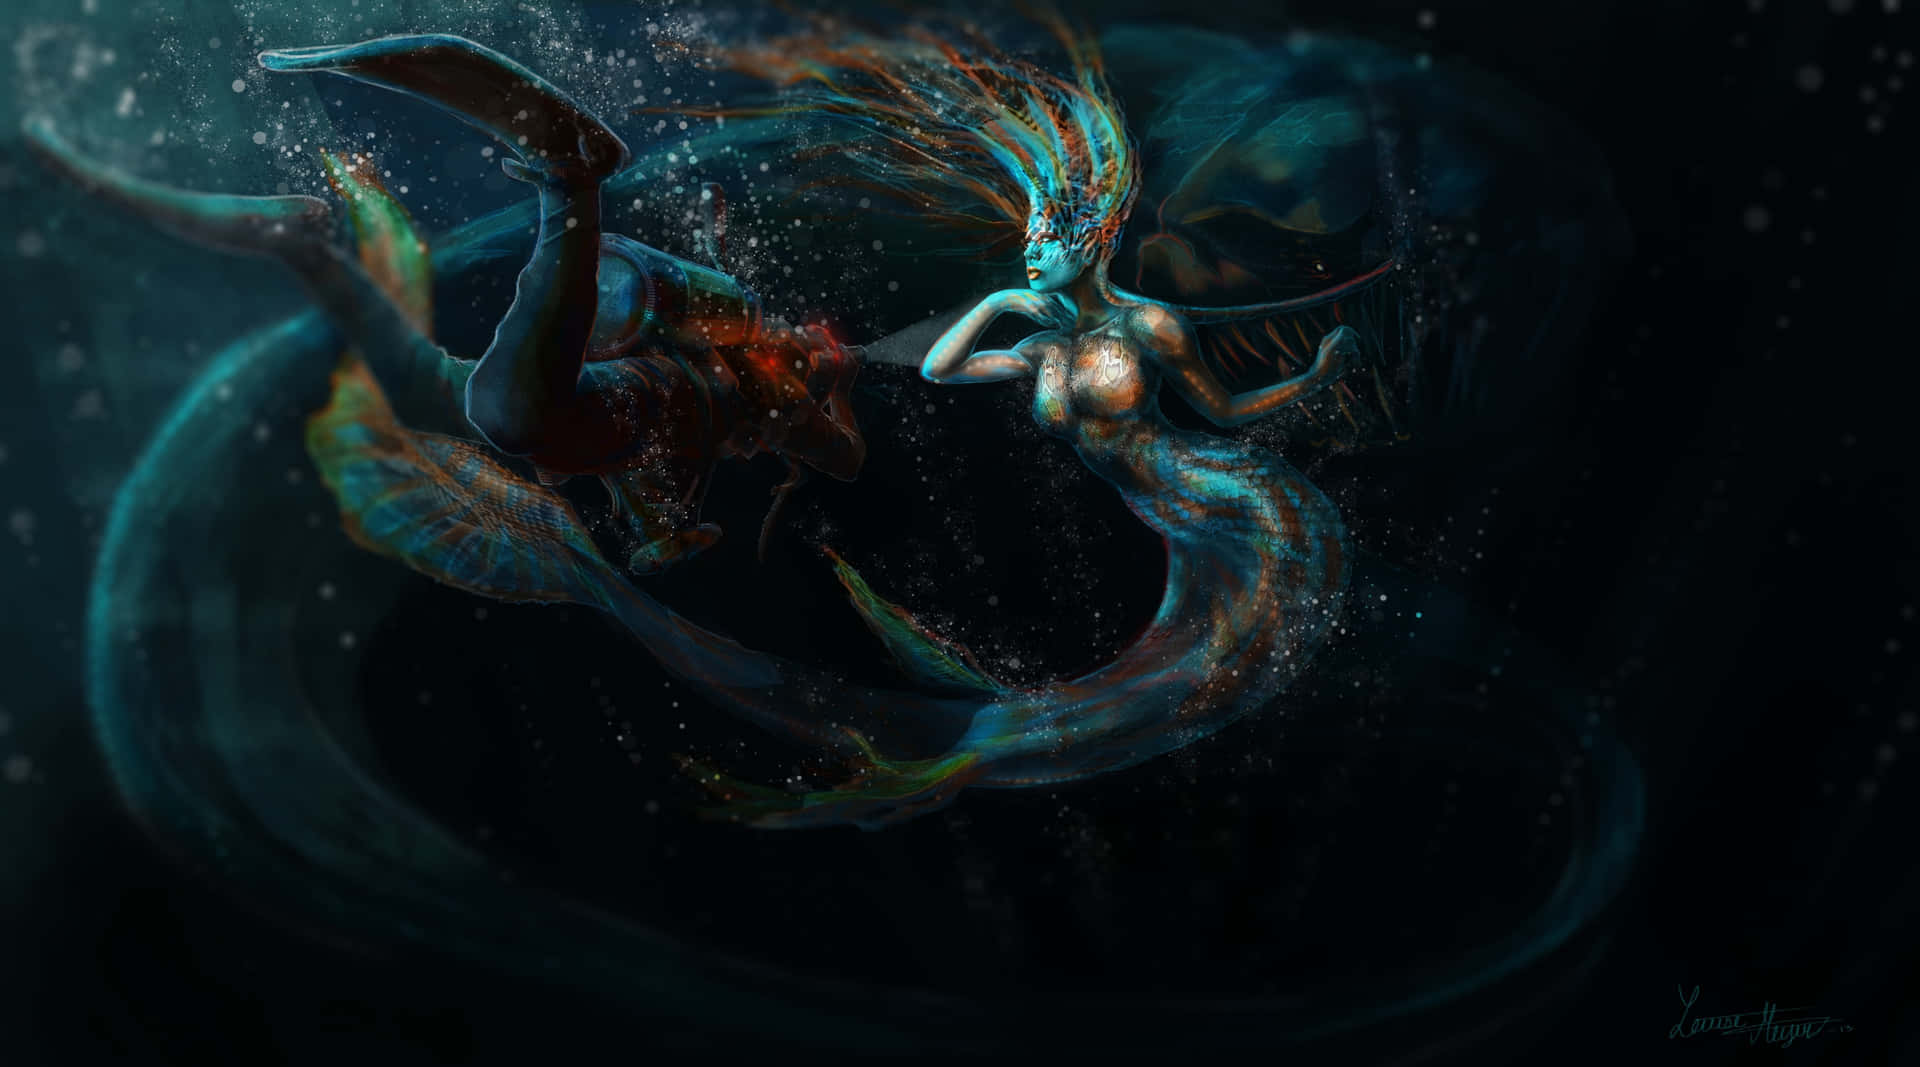 Imagende Sirena Princesa Con Una Estética Oscura Y Acuática Y Colores Vibrantes